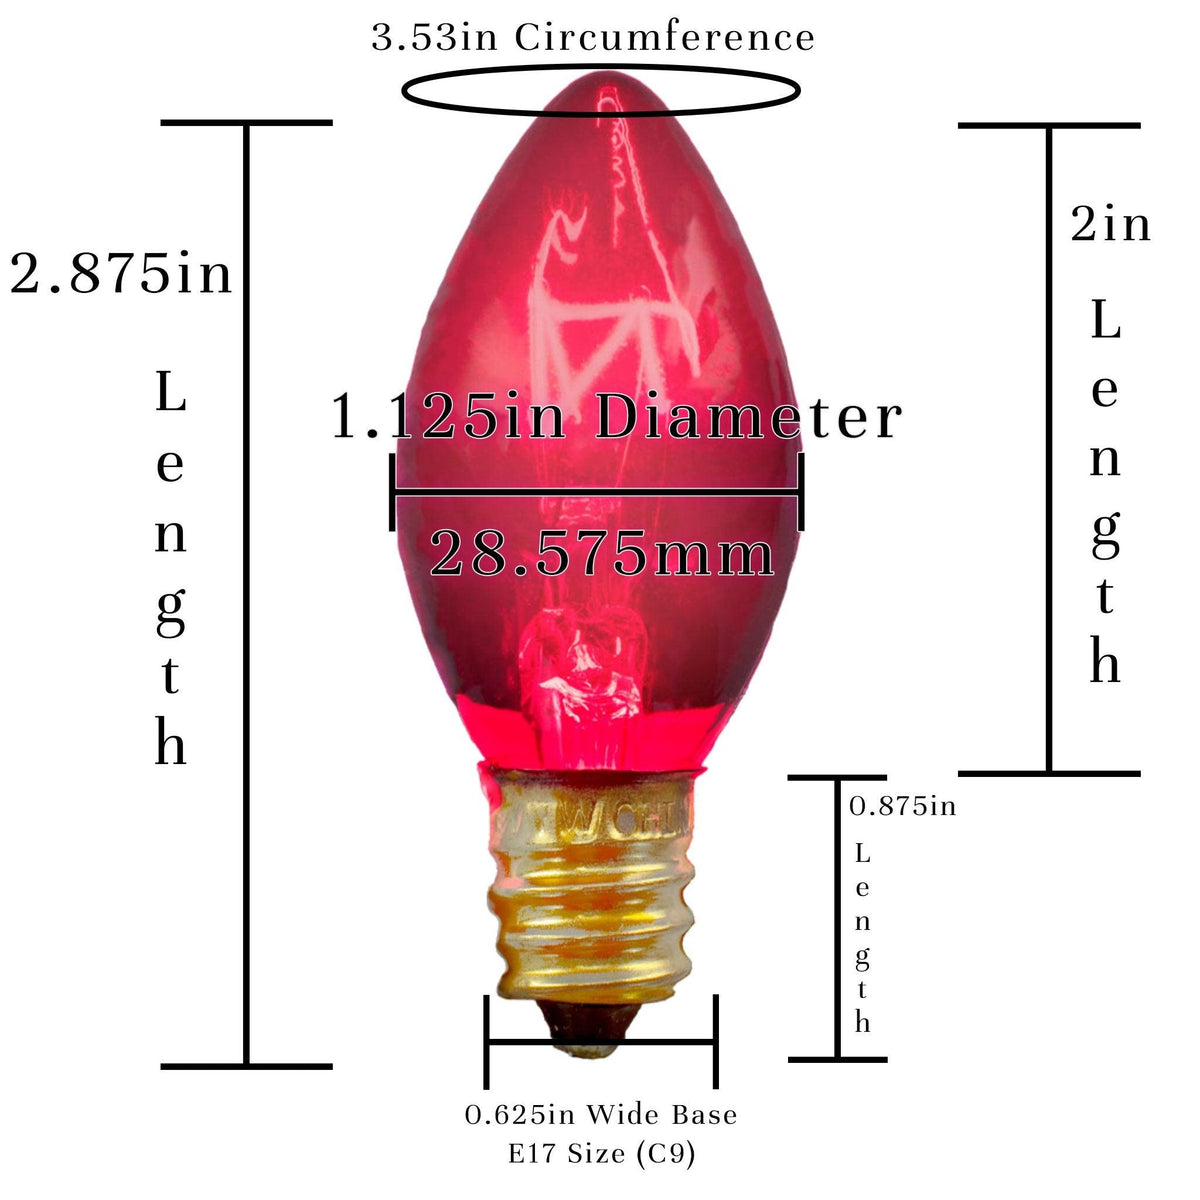 Buy brand new boxes of C-7 & C-9 Pink Christmas Light Bulbs at LeeDisplay.com